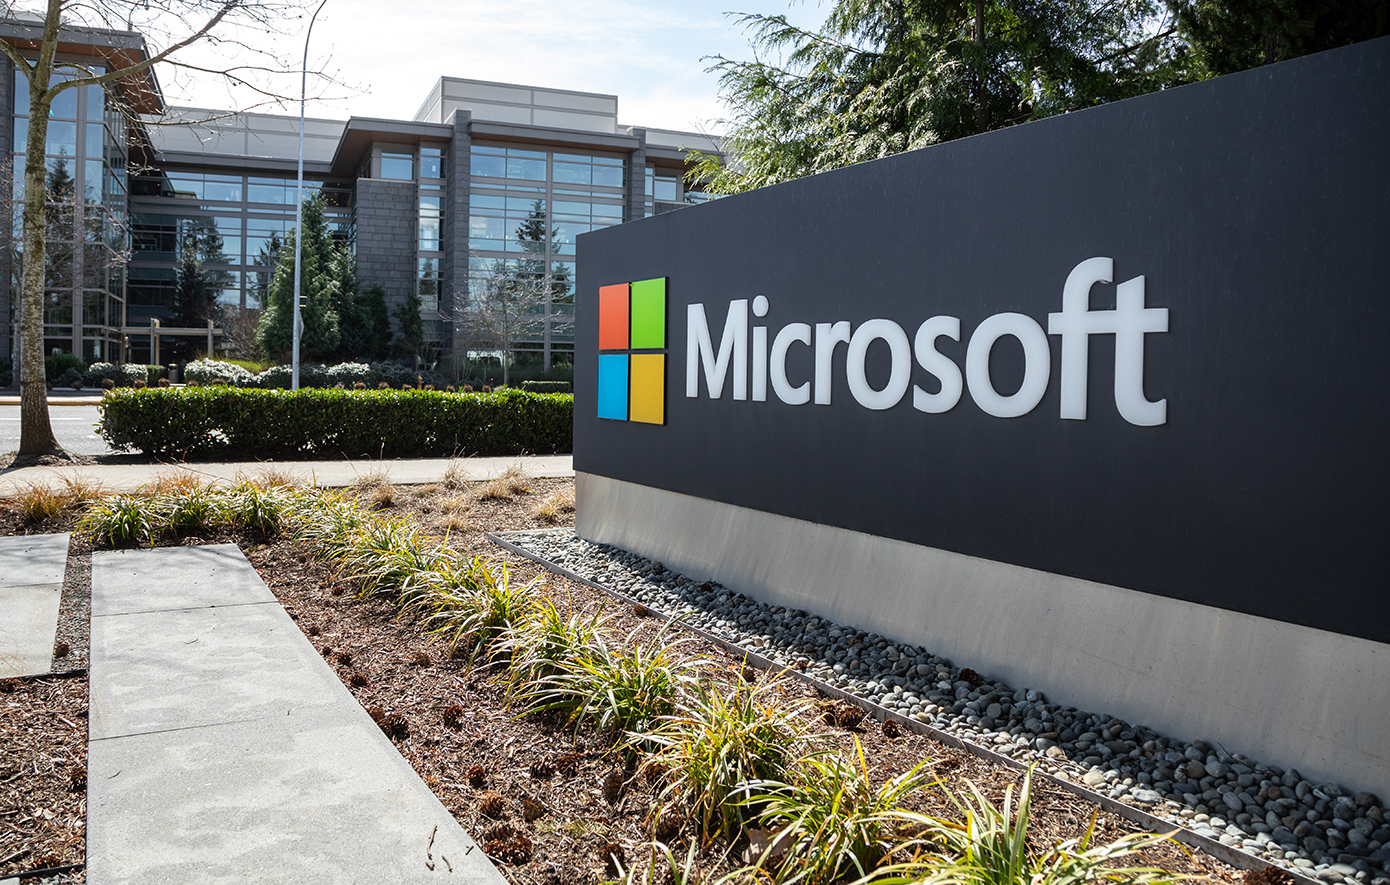 Ψηφιακό black out: Η Microsoft ανακοίνωσε ότι επιδιορθώθηκε η αιτία του προβλήματος στις εφαρμογές και υπηρεσίες της 365